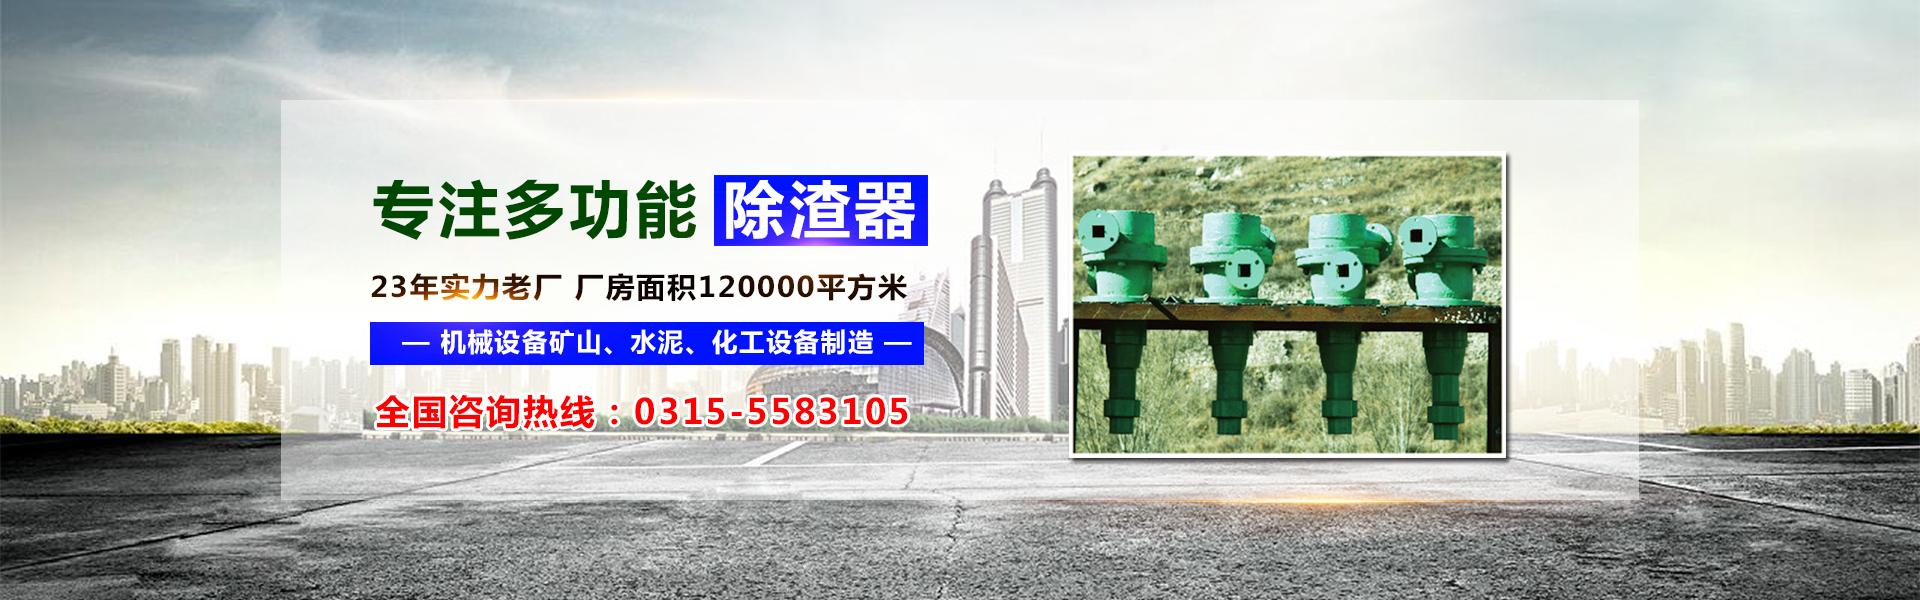 唐山皇冠国际机械设备有限公司